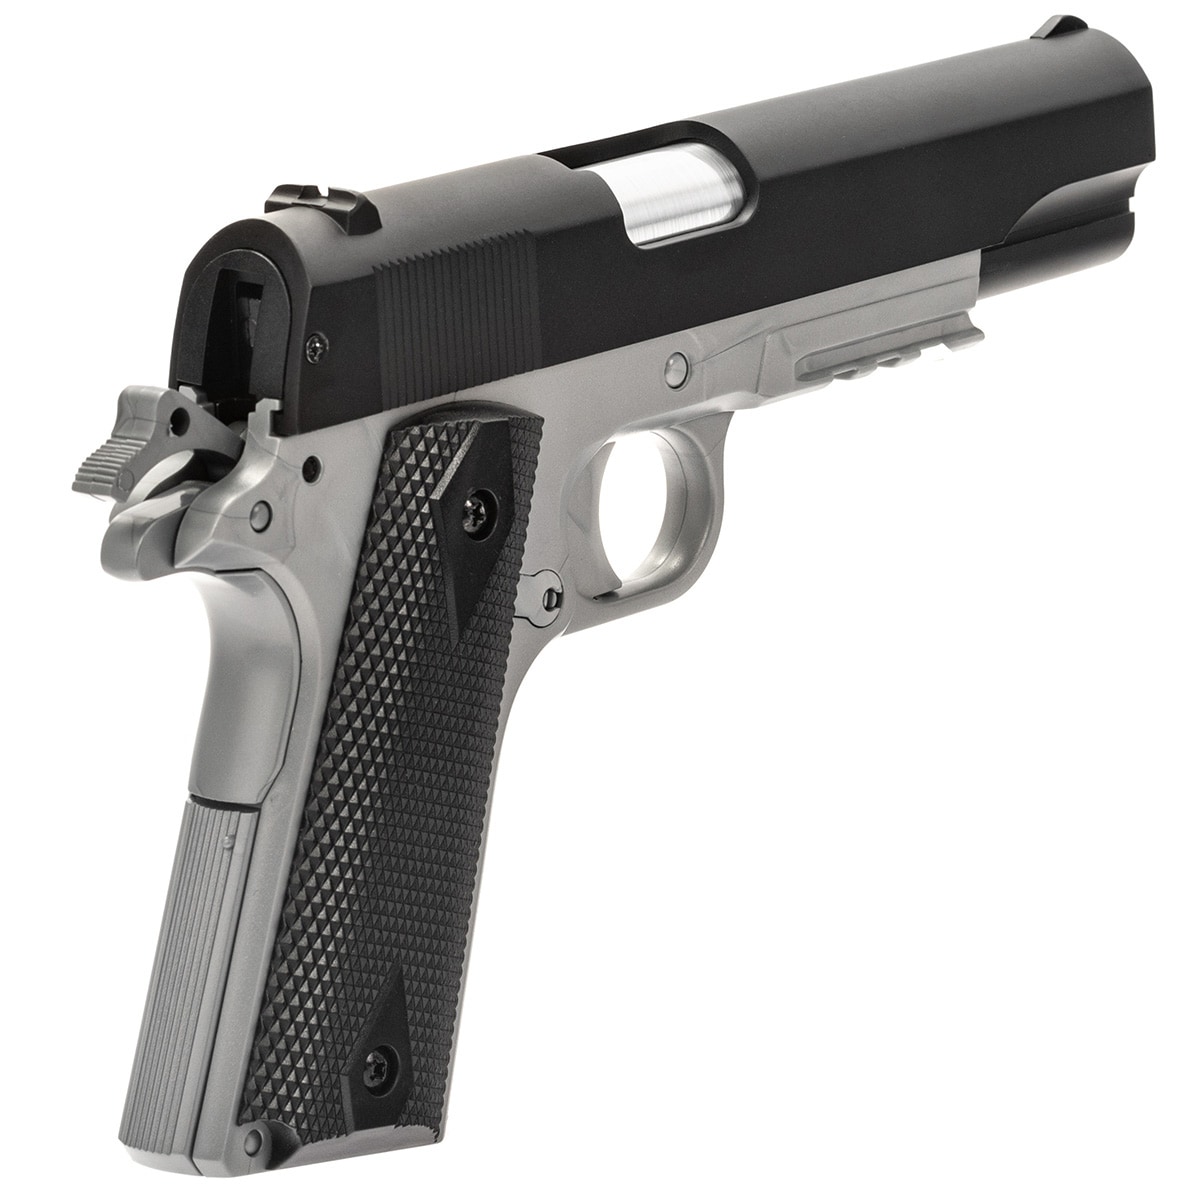 Pistolet ASG Cybergun Colt 1911A1 H.P.A. Metal Slide Dual Tone